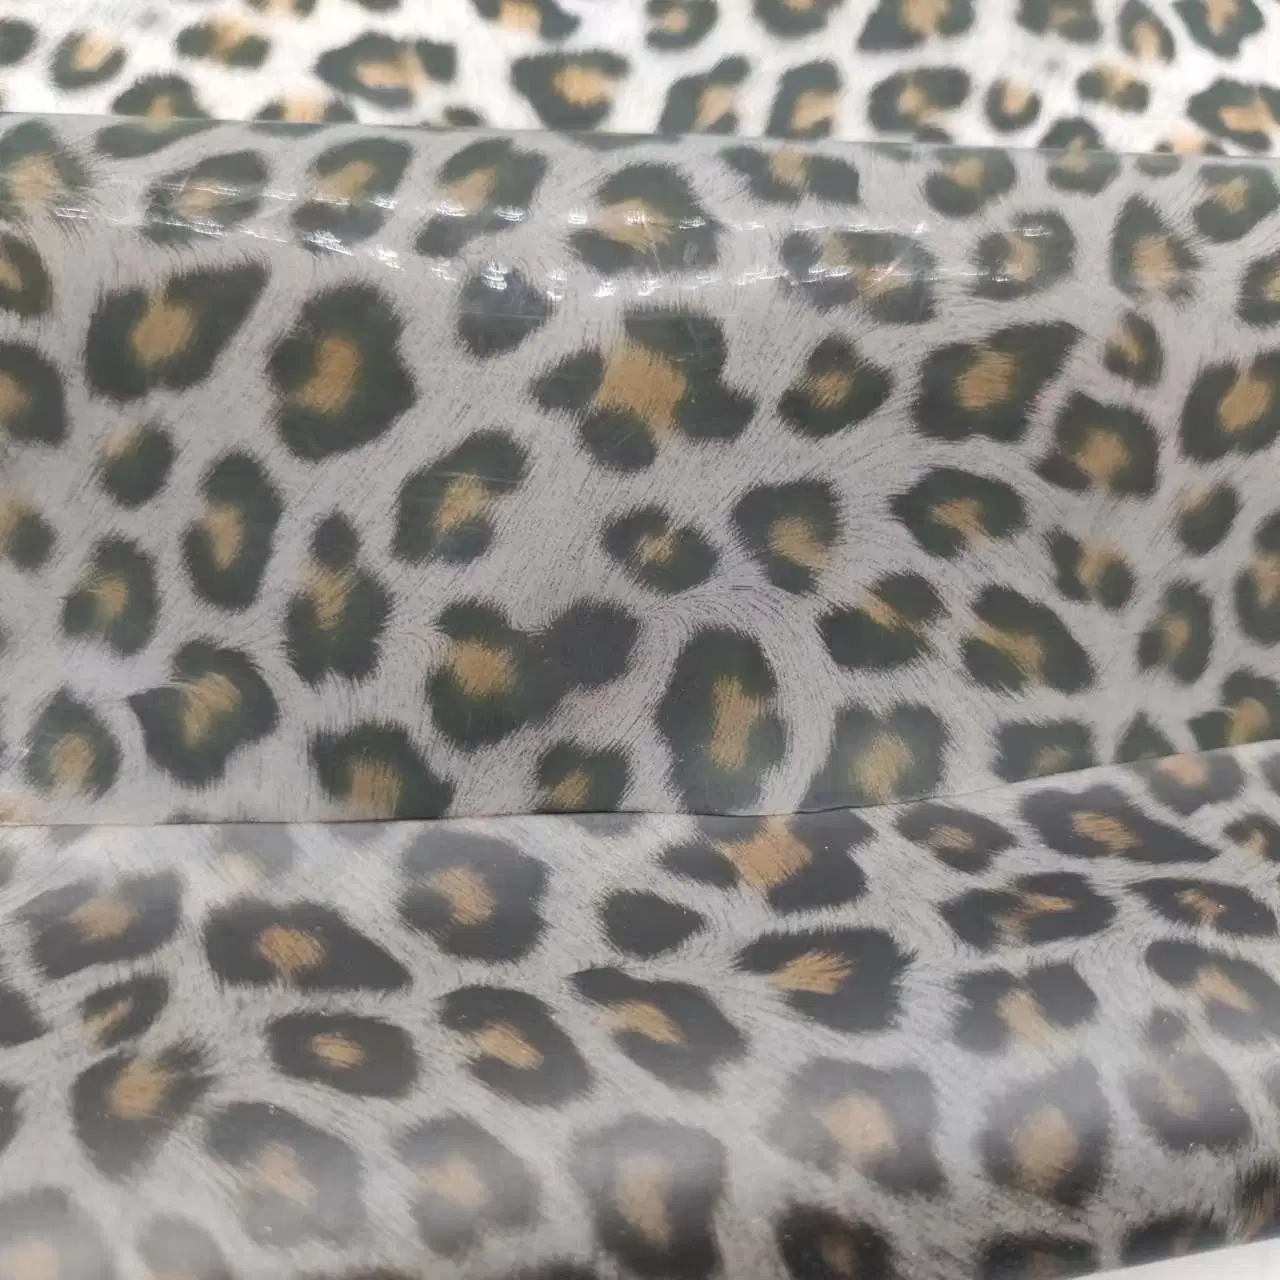 Resistente al agua 100% Windproof Oilproof TPU Leopard impresos digitales textiles funcionales para el exterior abrigo Chaqueta Pantalón capa de polvo